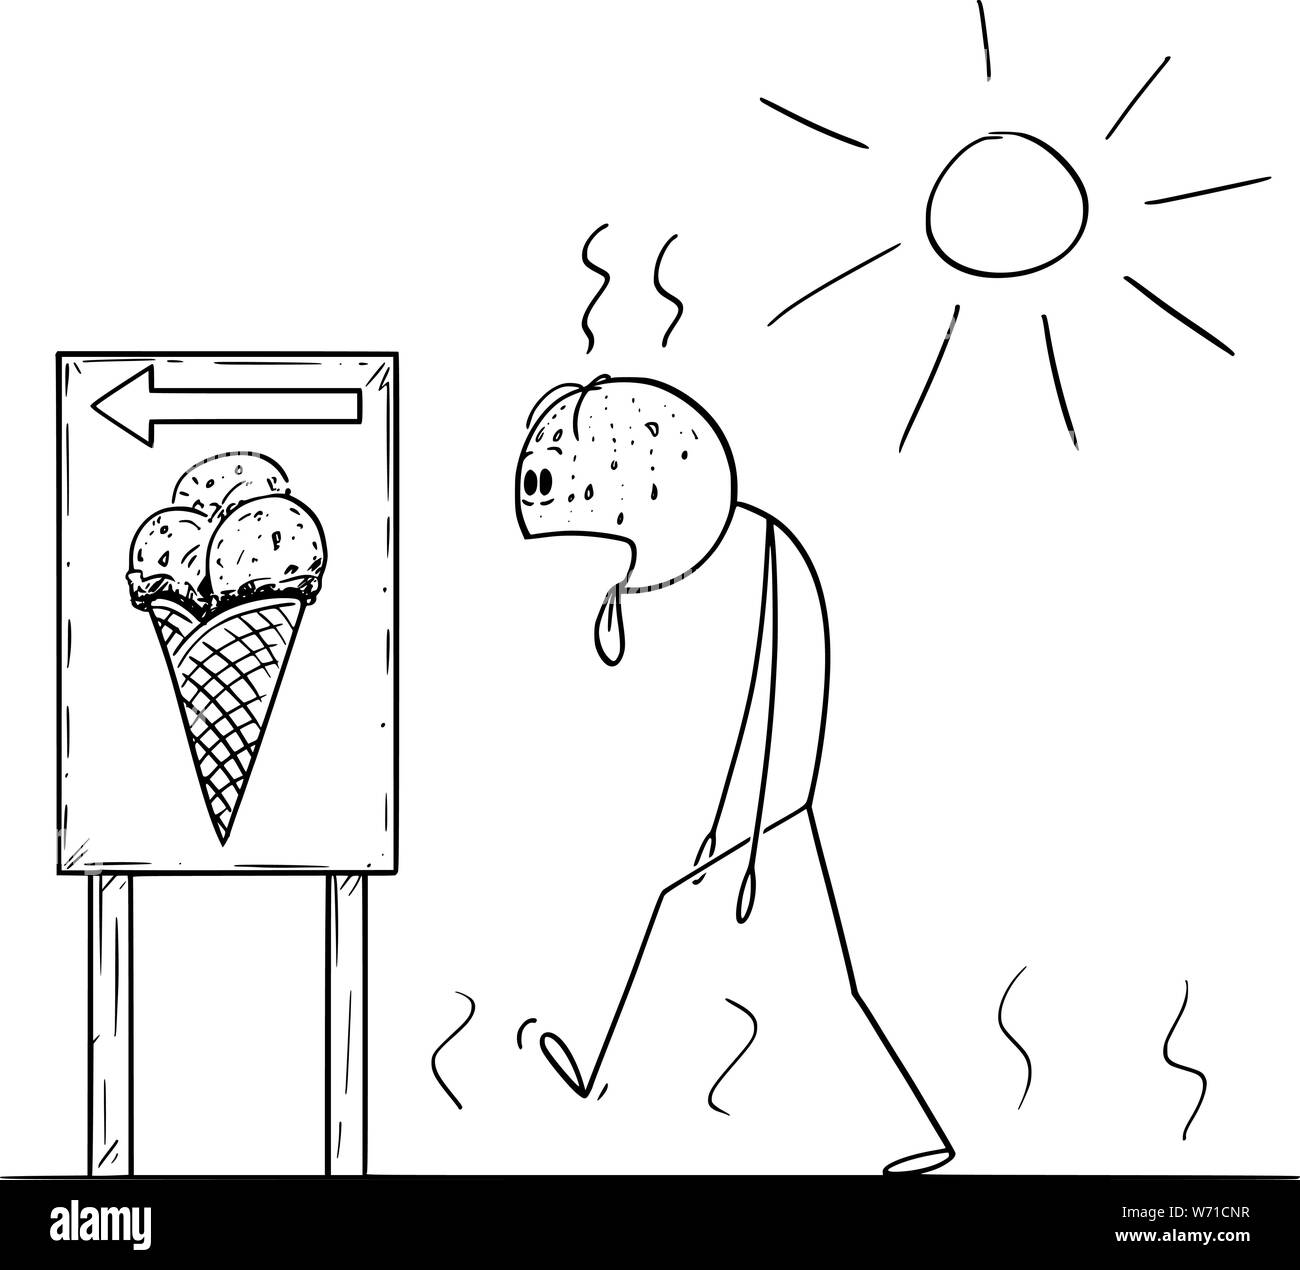 Vektor cartoon Strichmännchen Zeichnen konzeptionelle Darstellung der erschöpften Mann in sonniger Tag im Sommer Eis mit Zunge zu kaufen, Räkelt. Stock Vektor